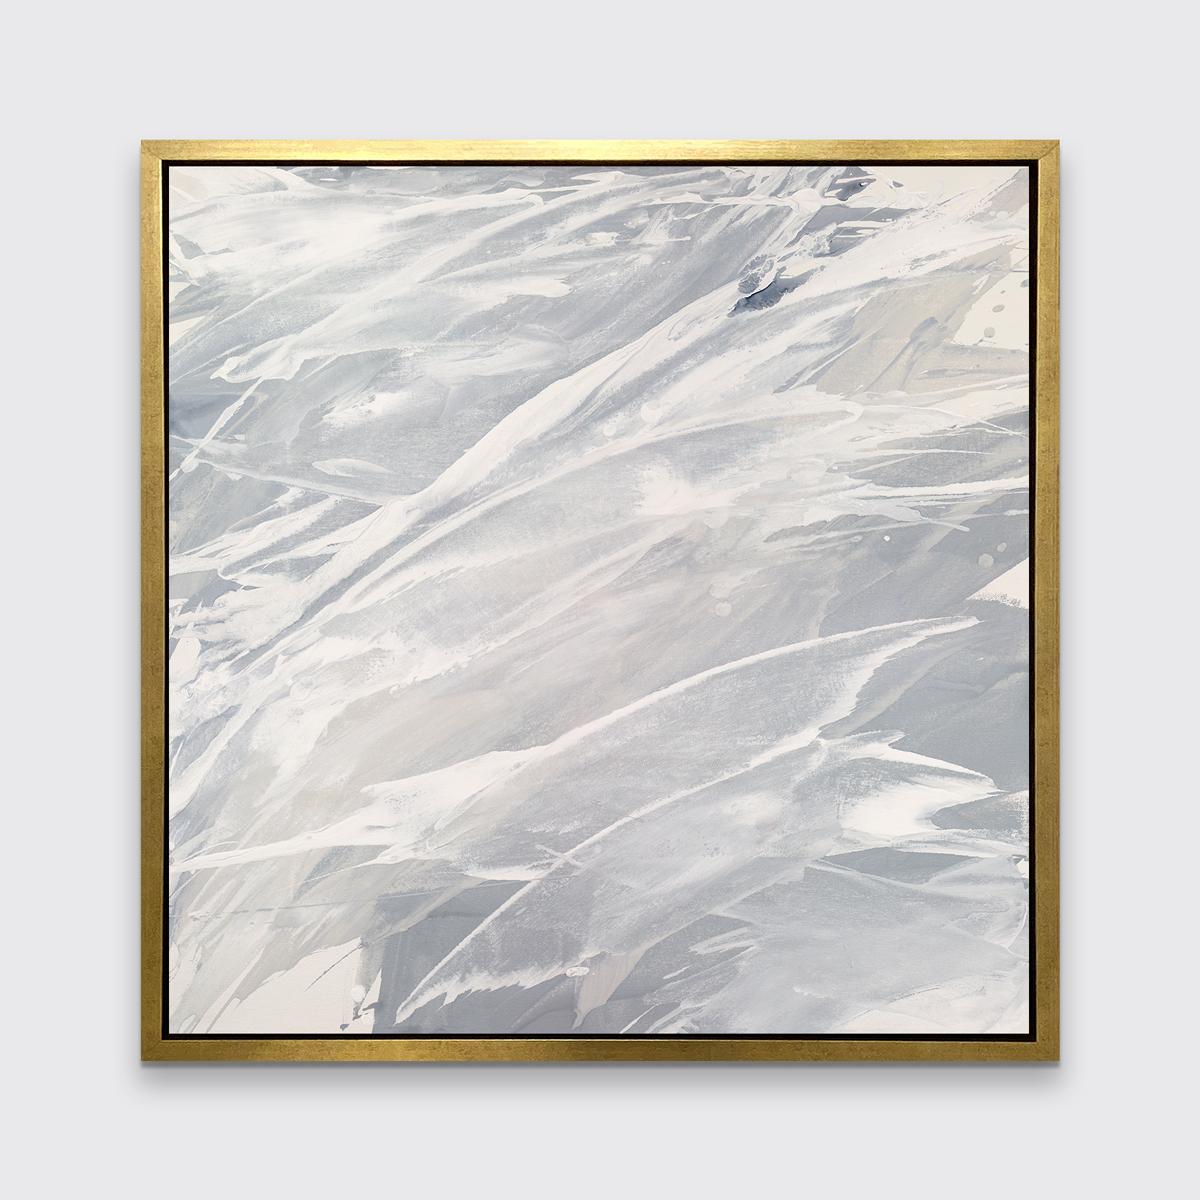 Dieser zeitgenössische Druck in limitierter Auflage von Teodora Guererra zeichnet sich durch eine warme Grau- und Weißpalette mit Schichten neutraler Farben aus, die fast über die Komposition spritzen. Dieser Druck passt hervorragend zu den